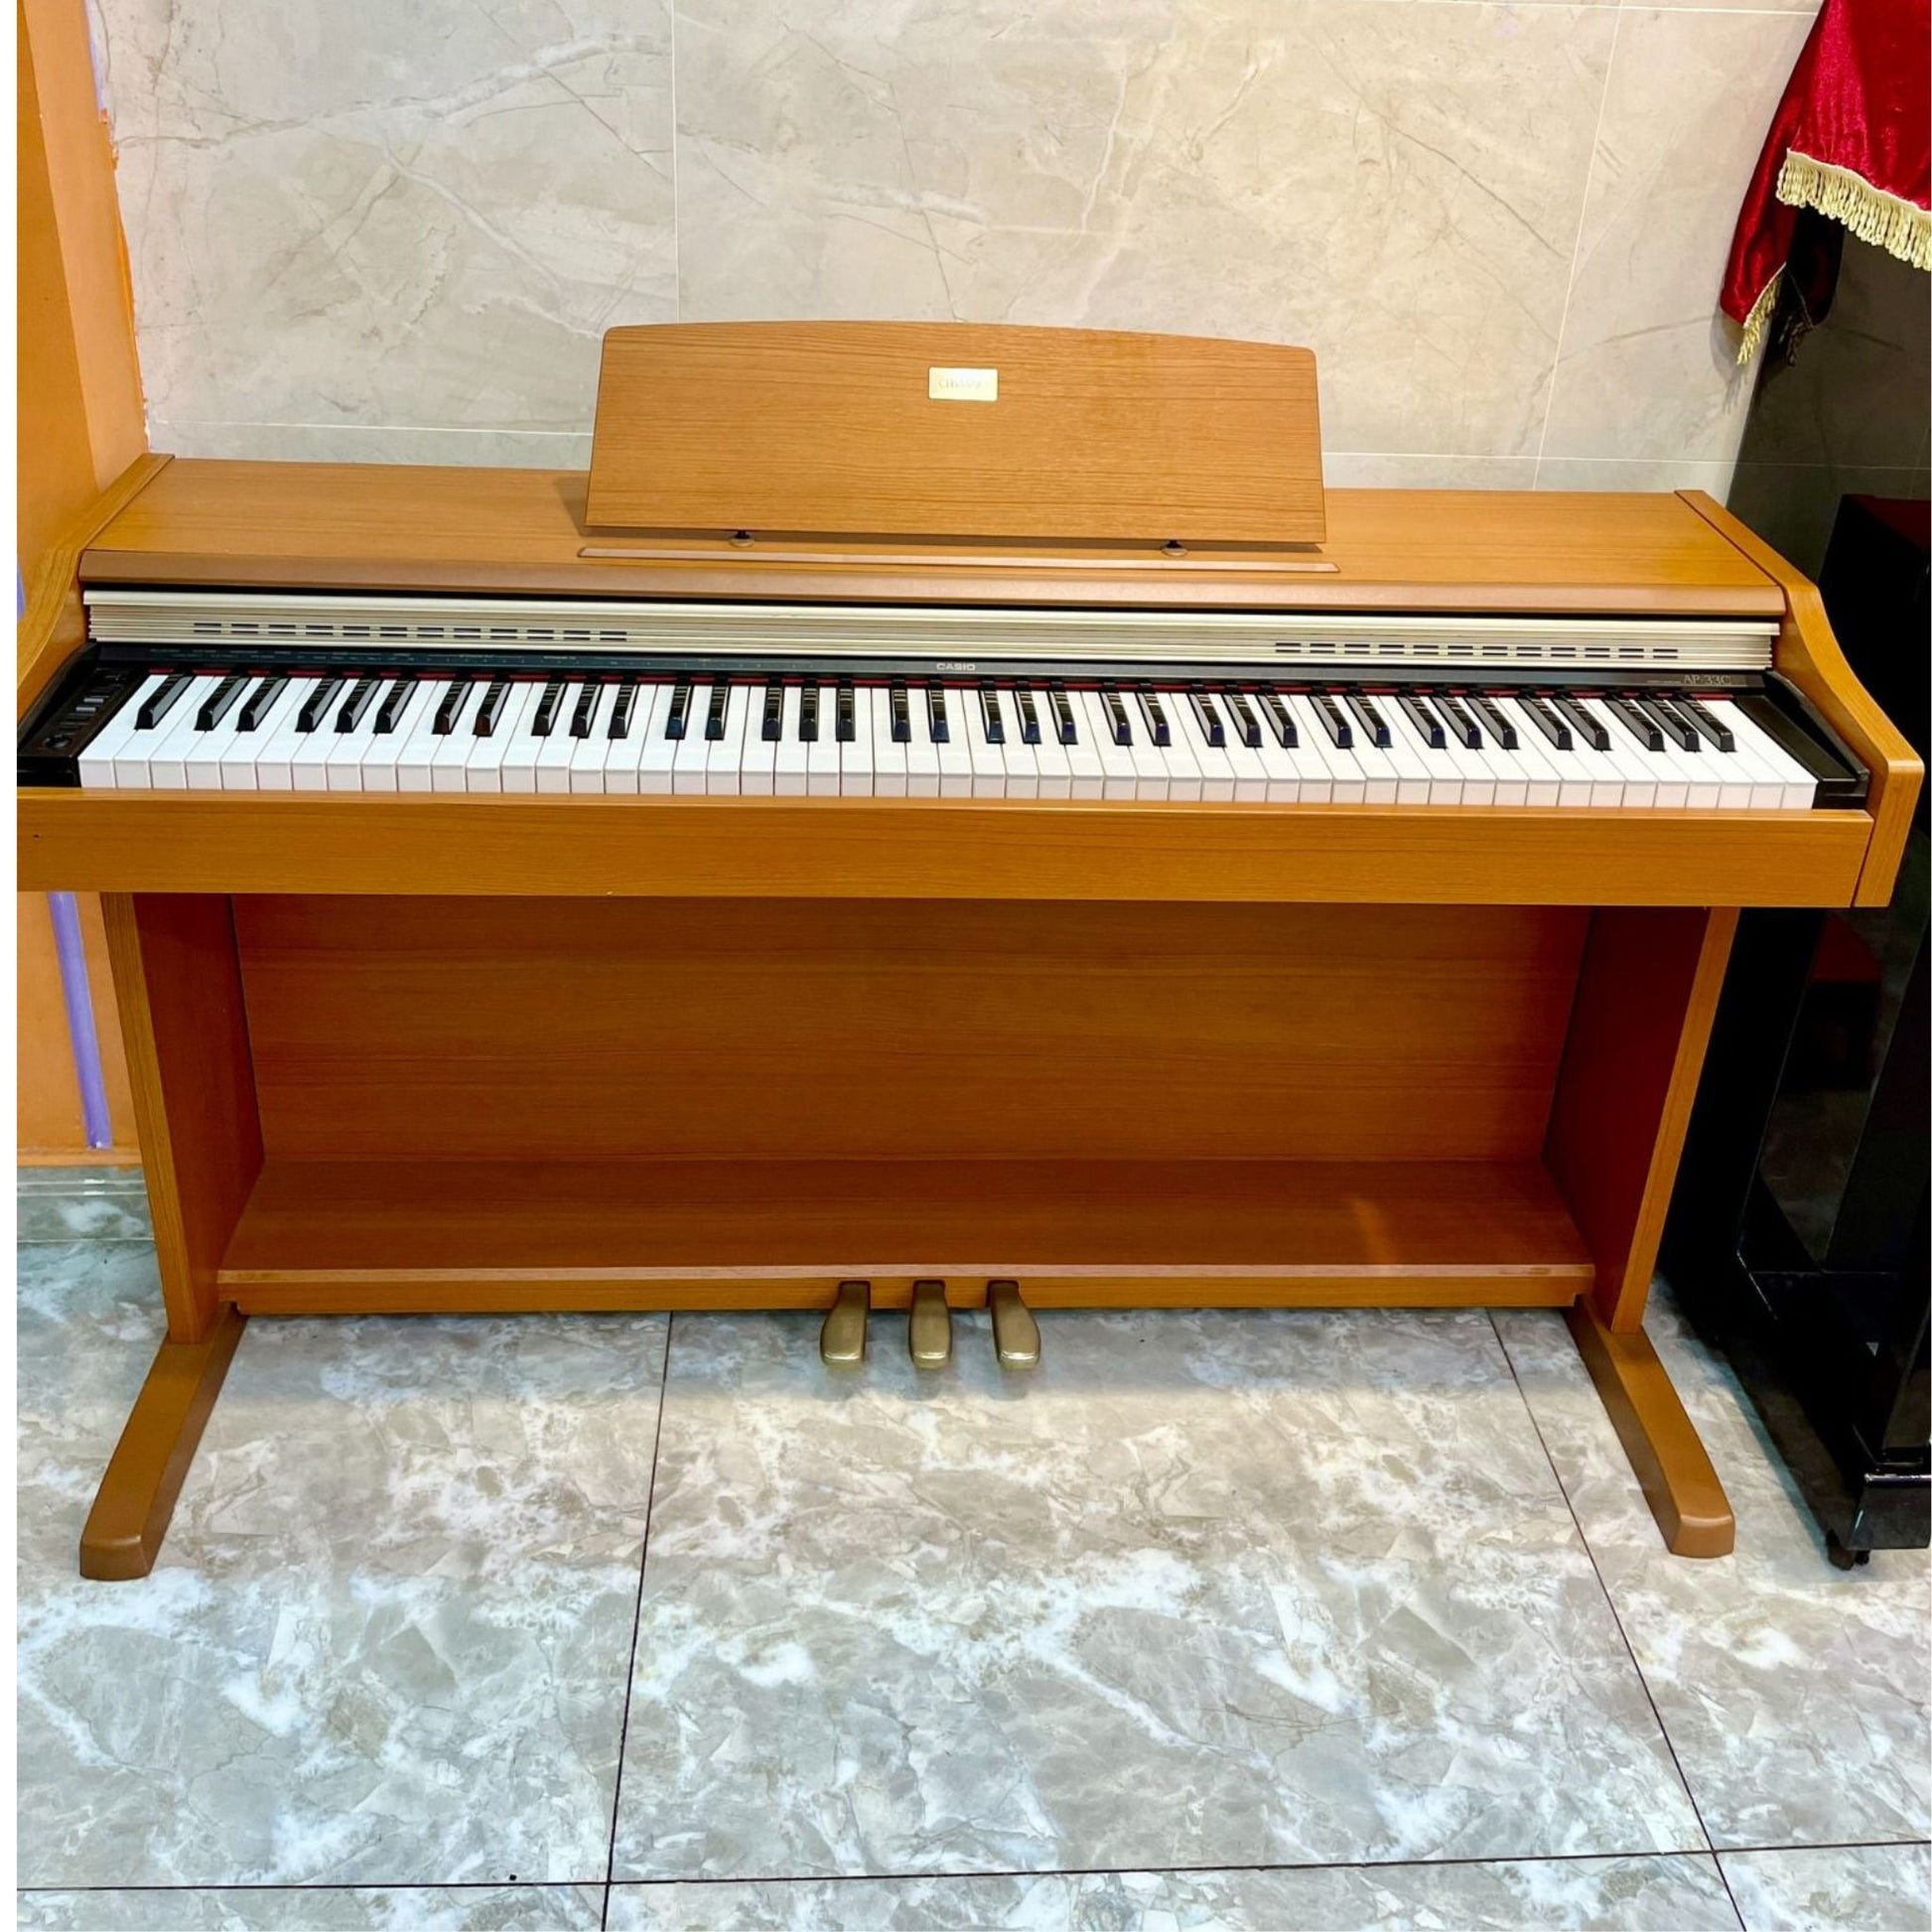 Đàn Piano Điện Casio AP-33 - Qua Sử Dụng - Việt Music